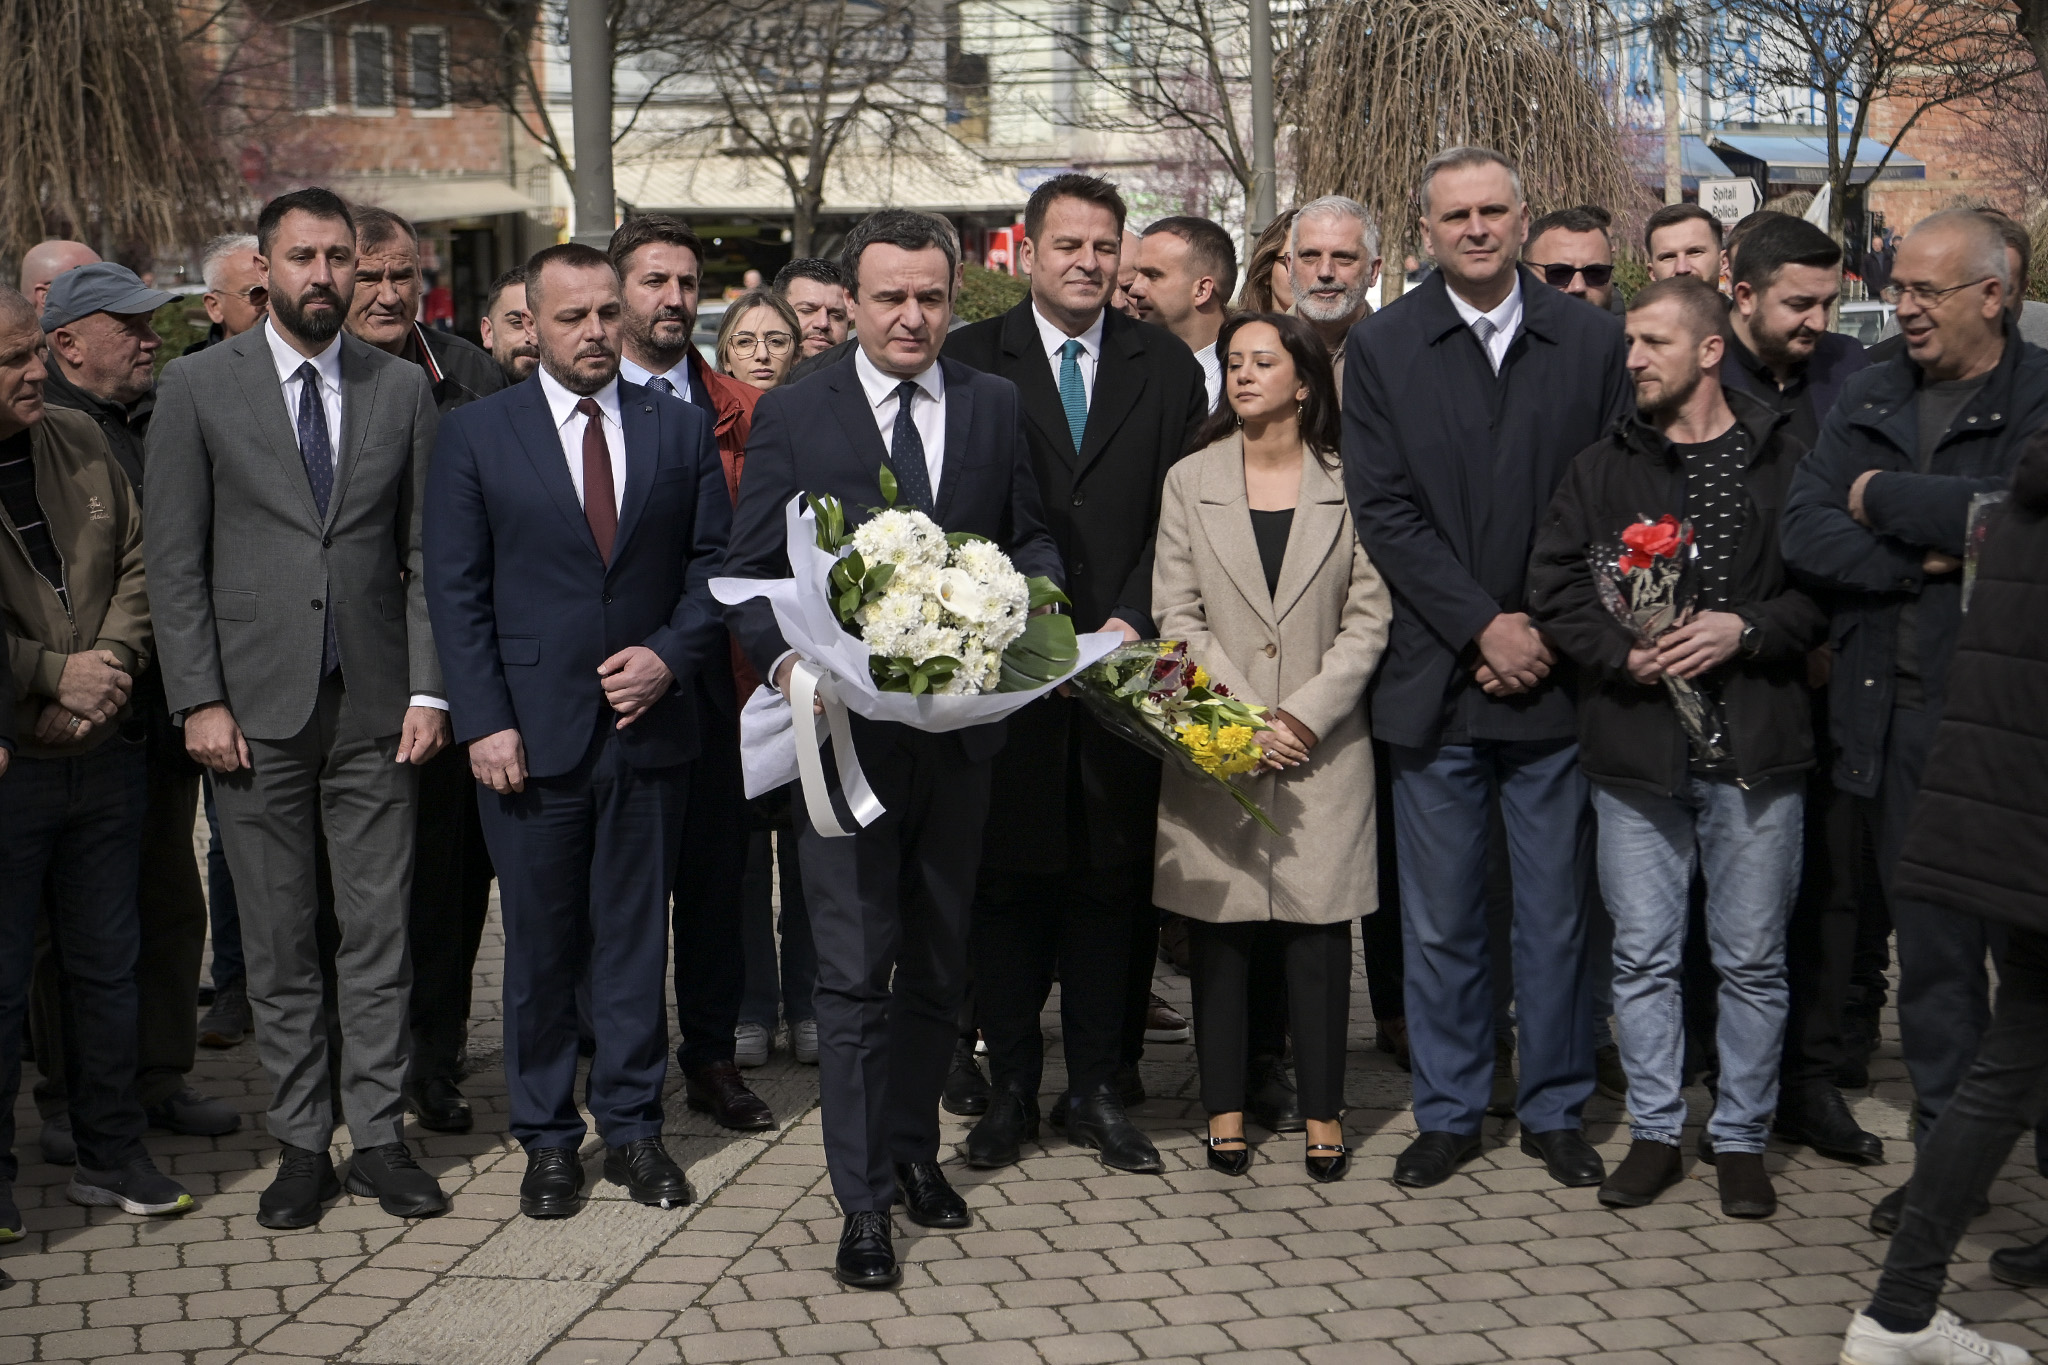 Kryeministri Kurti përkujton viktimat civile të vrara në Masakrën e Tregut të gjelbër në Mitrovicë